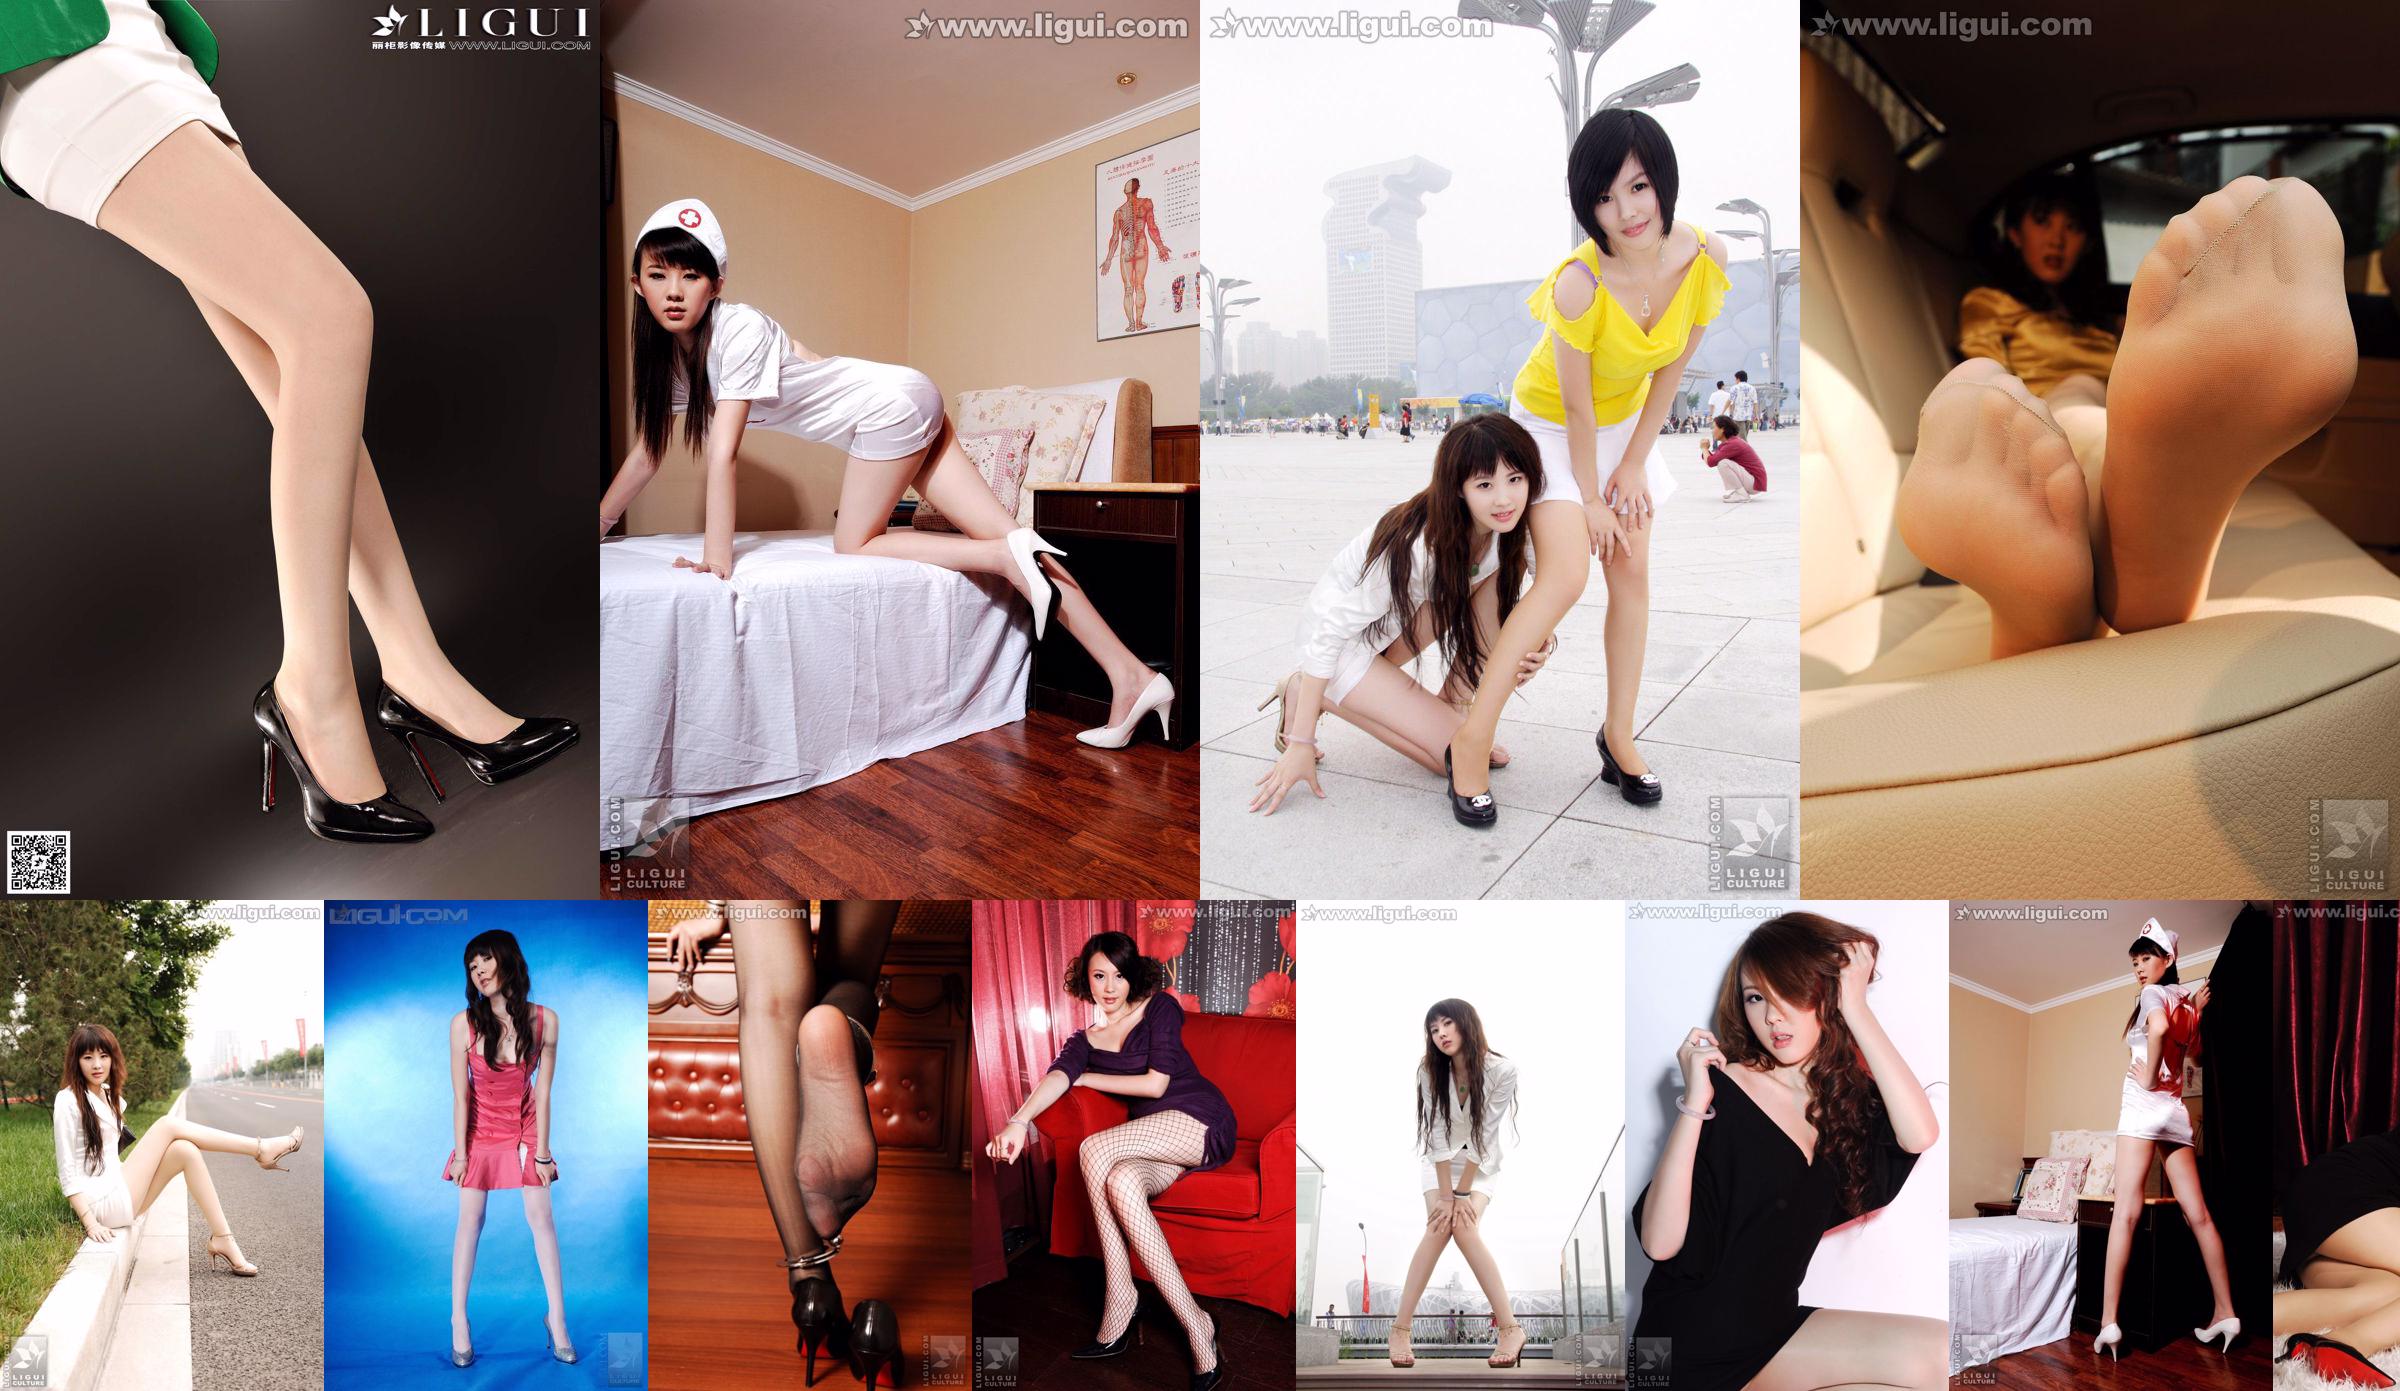 นางแบบ Feifei "สไตล์การล่อใจทางอินเทอร์เน็ต" [丽柜 LiGui] รูปถ่ายขาสวยและเท้าหยก No.180df7 หน้า 4